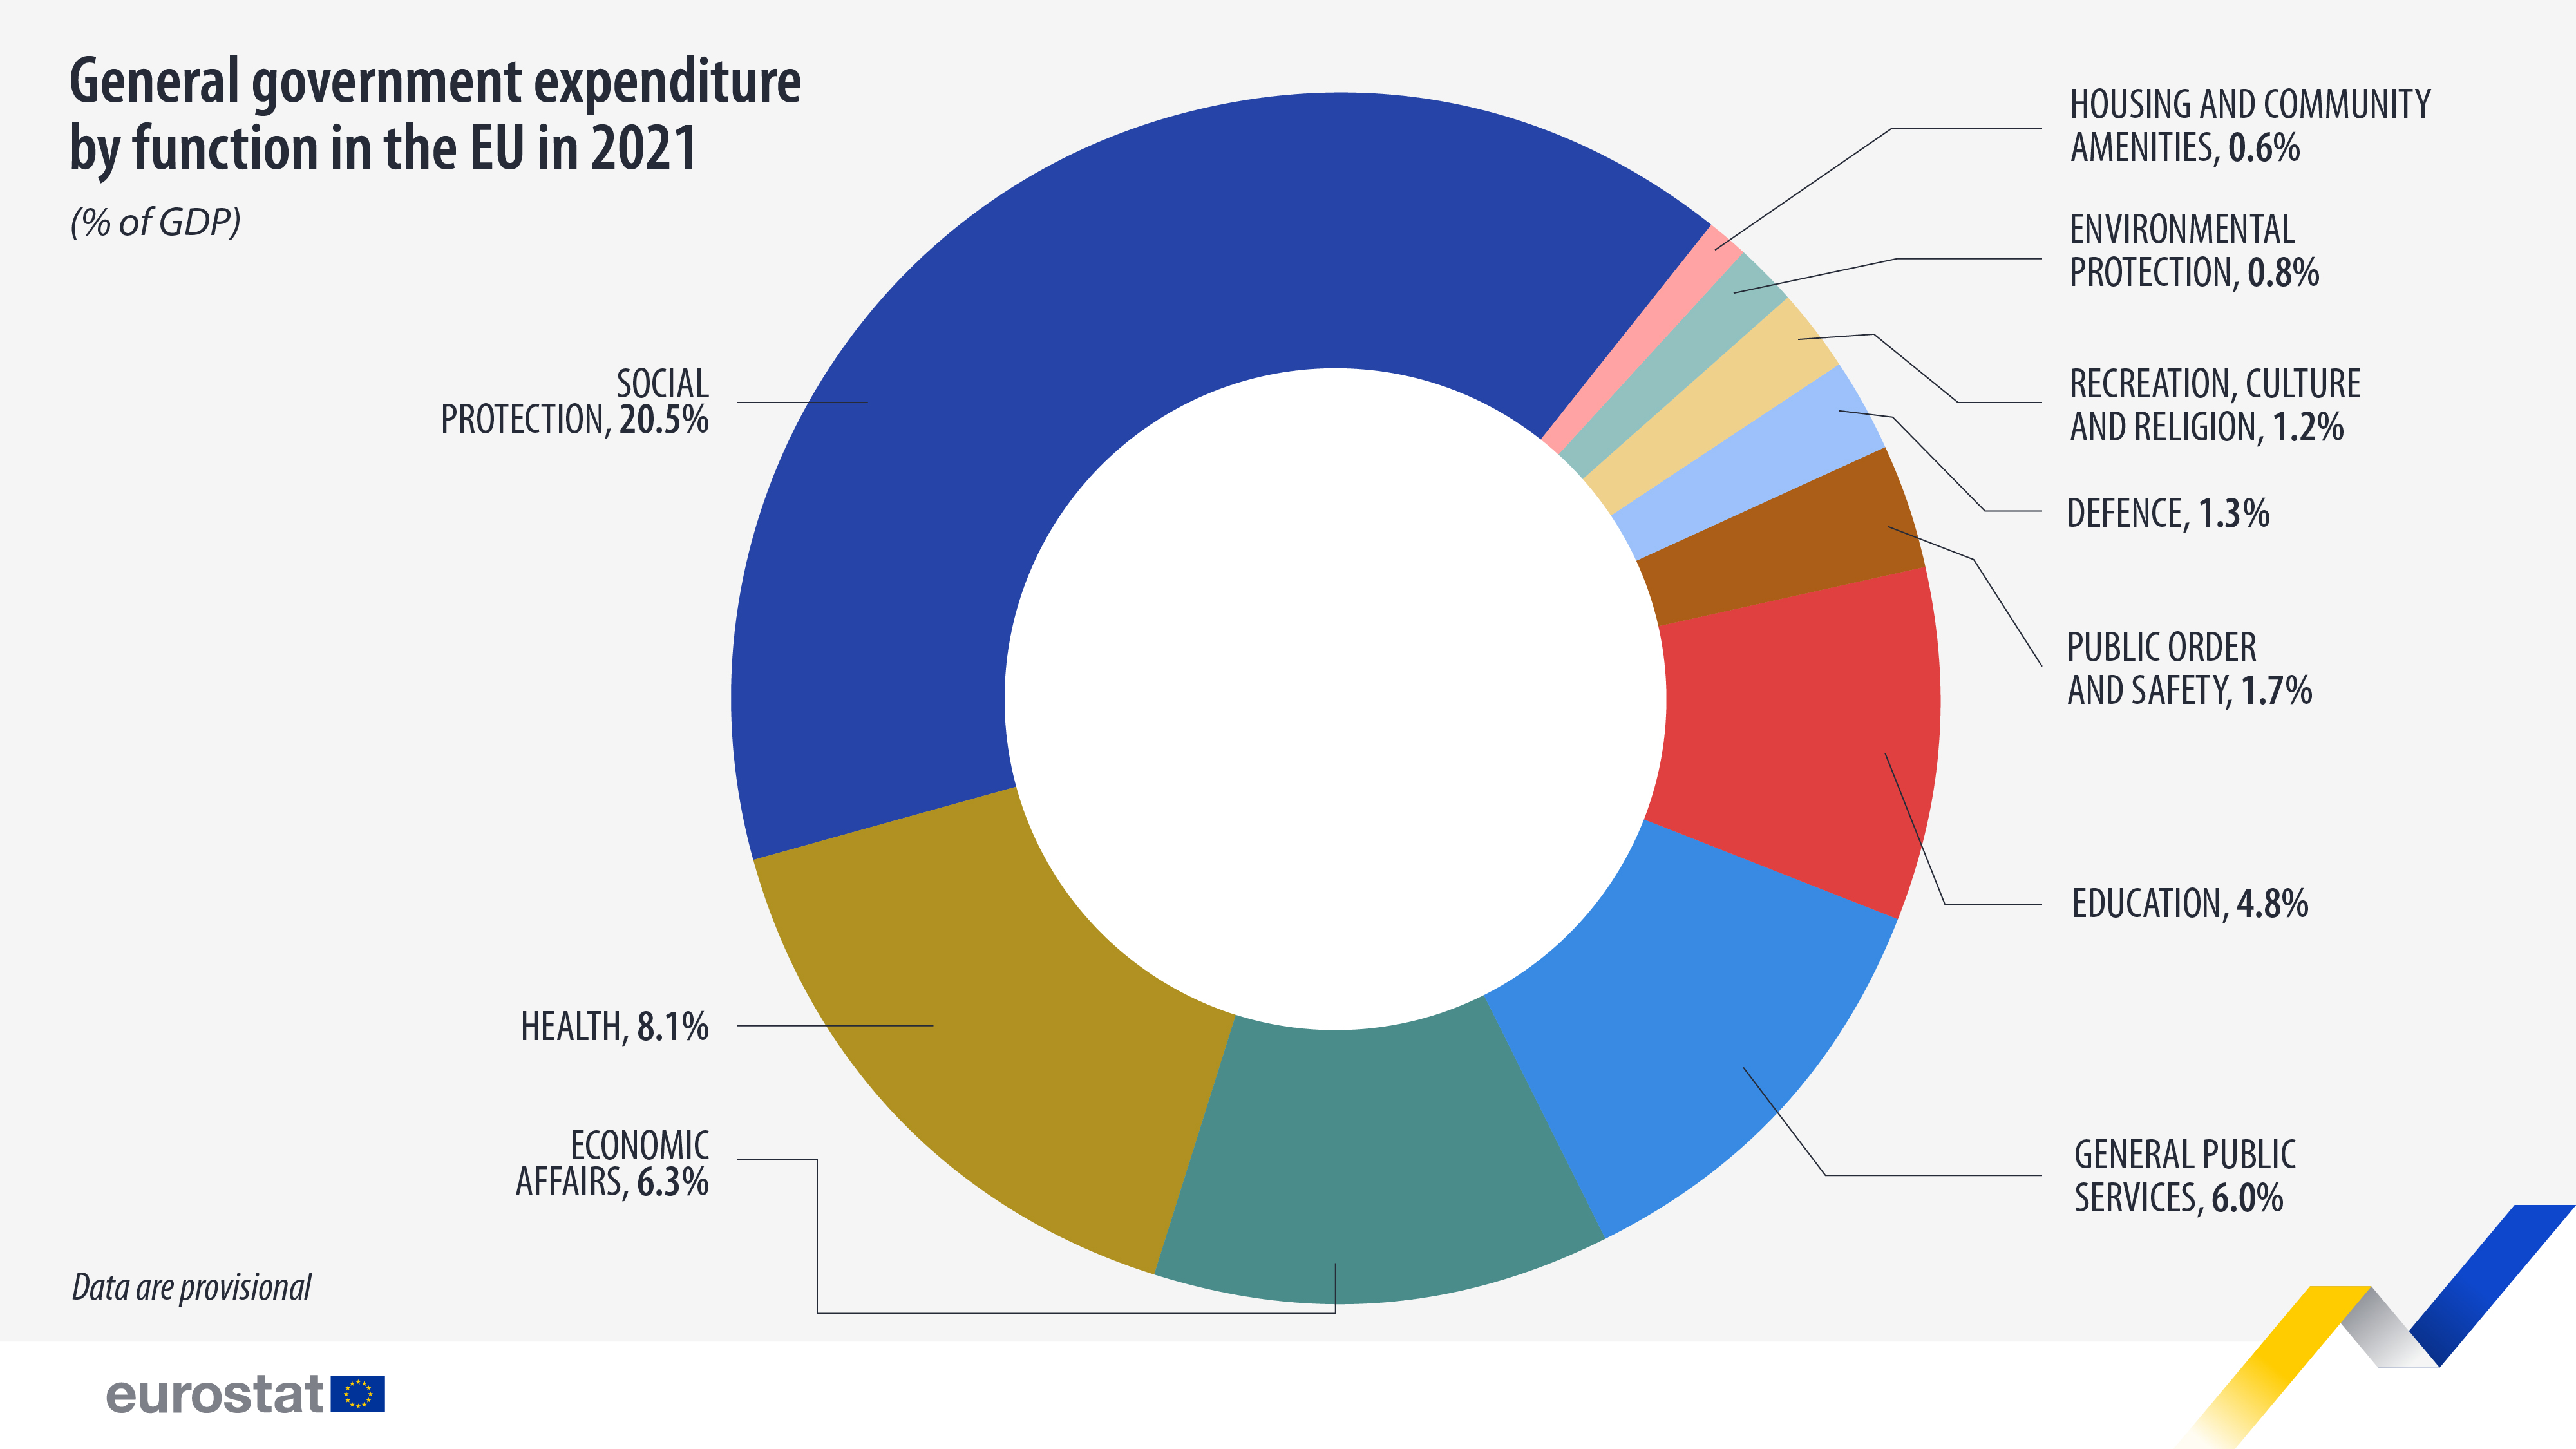 Круговая диаграмма: общие государственные расходы по функциям, 2021 г., % ВВП